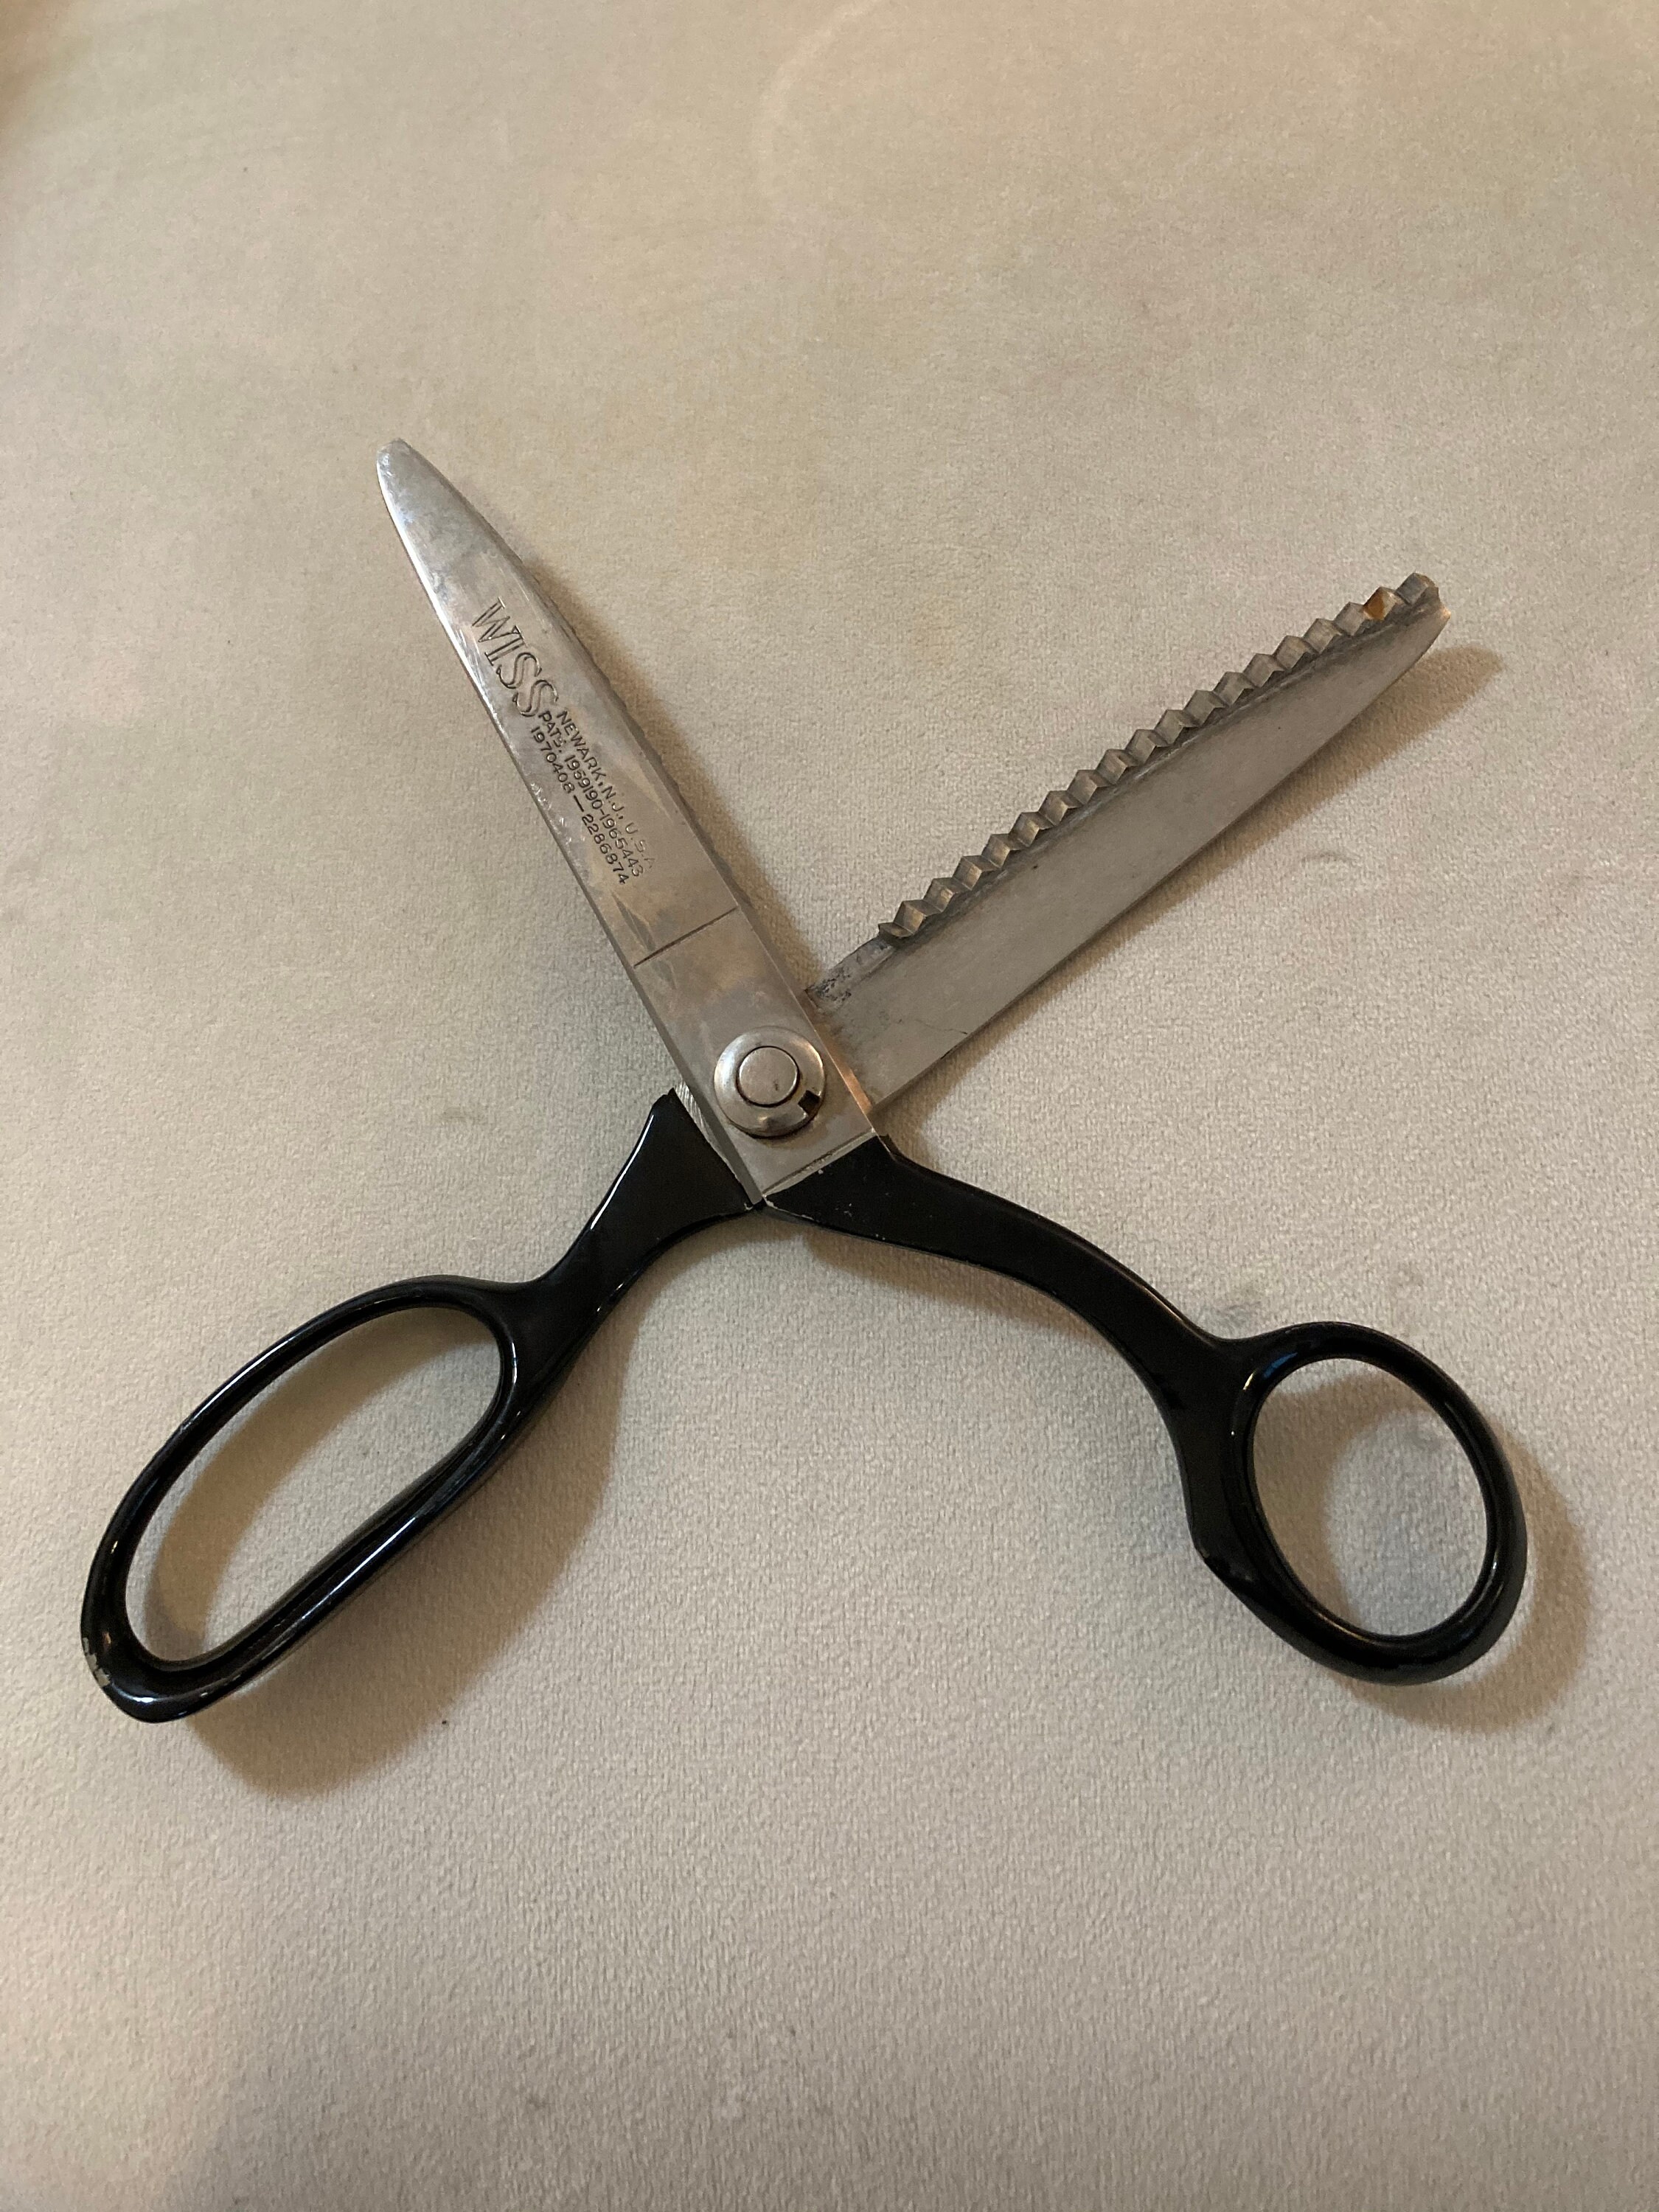 C.S. Osborne 8-1/4 E-Z Cut Leather Shears Scissors #708 Made In